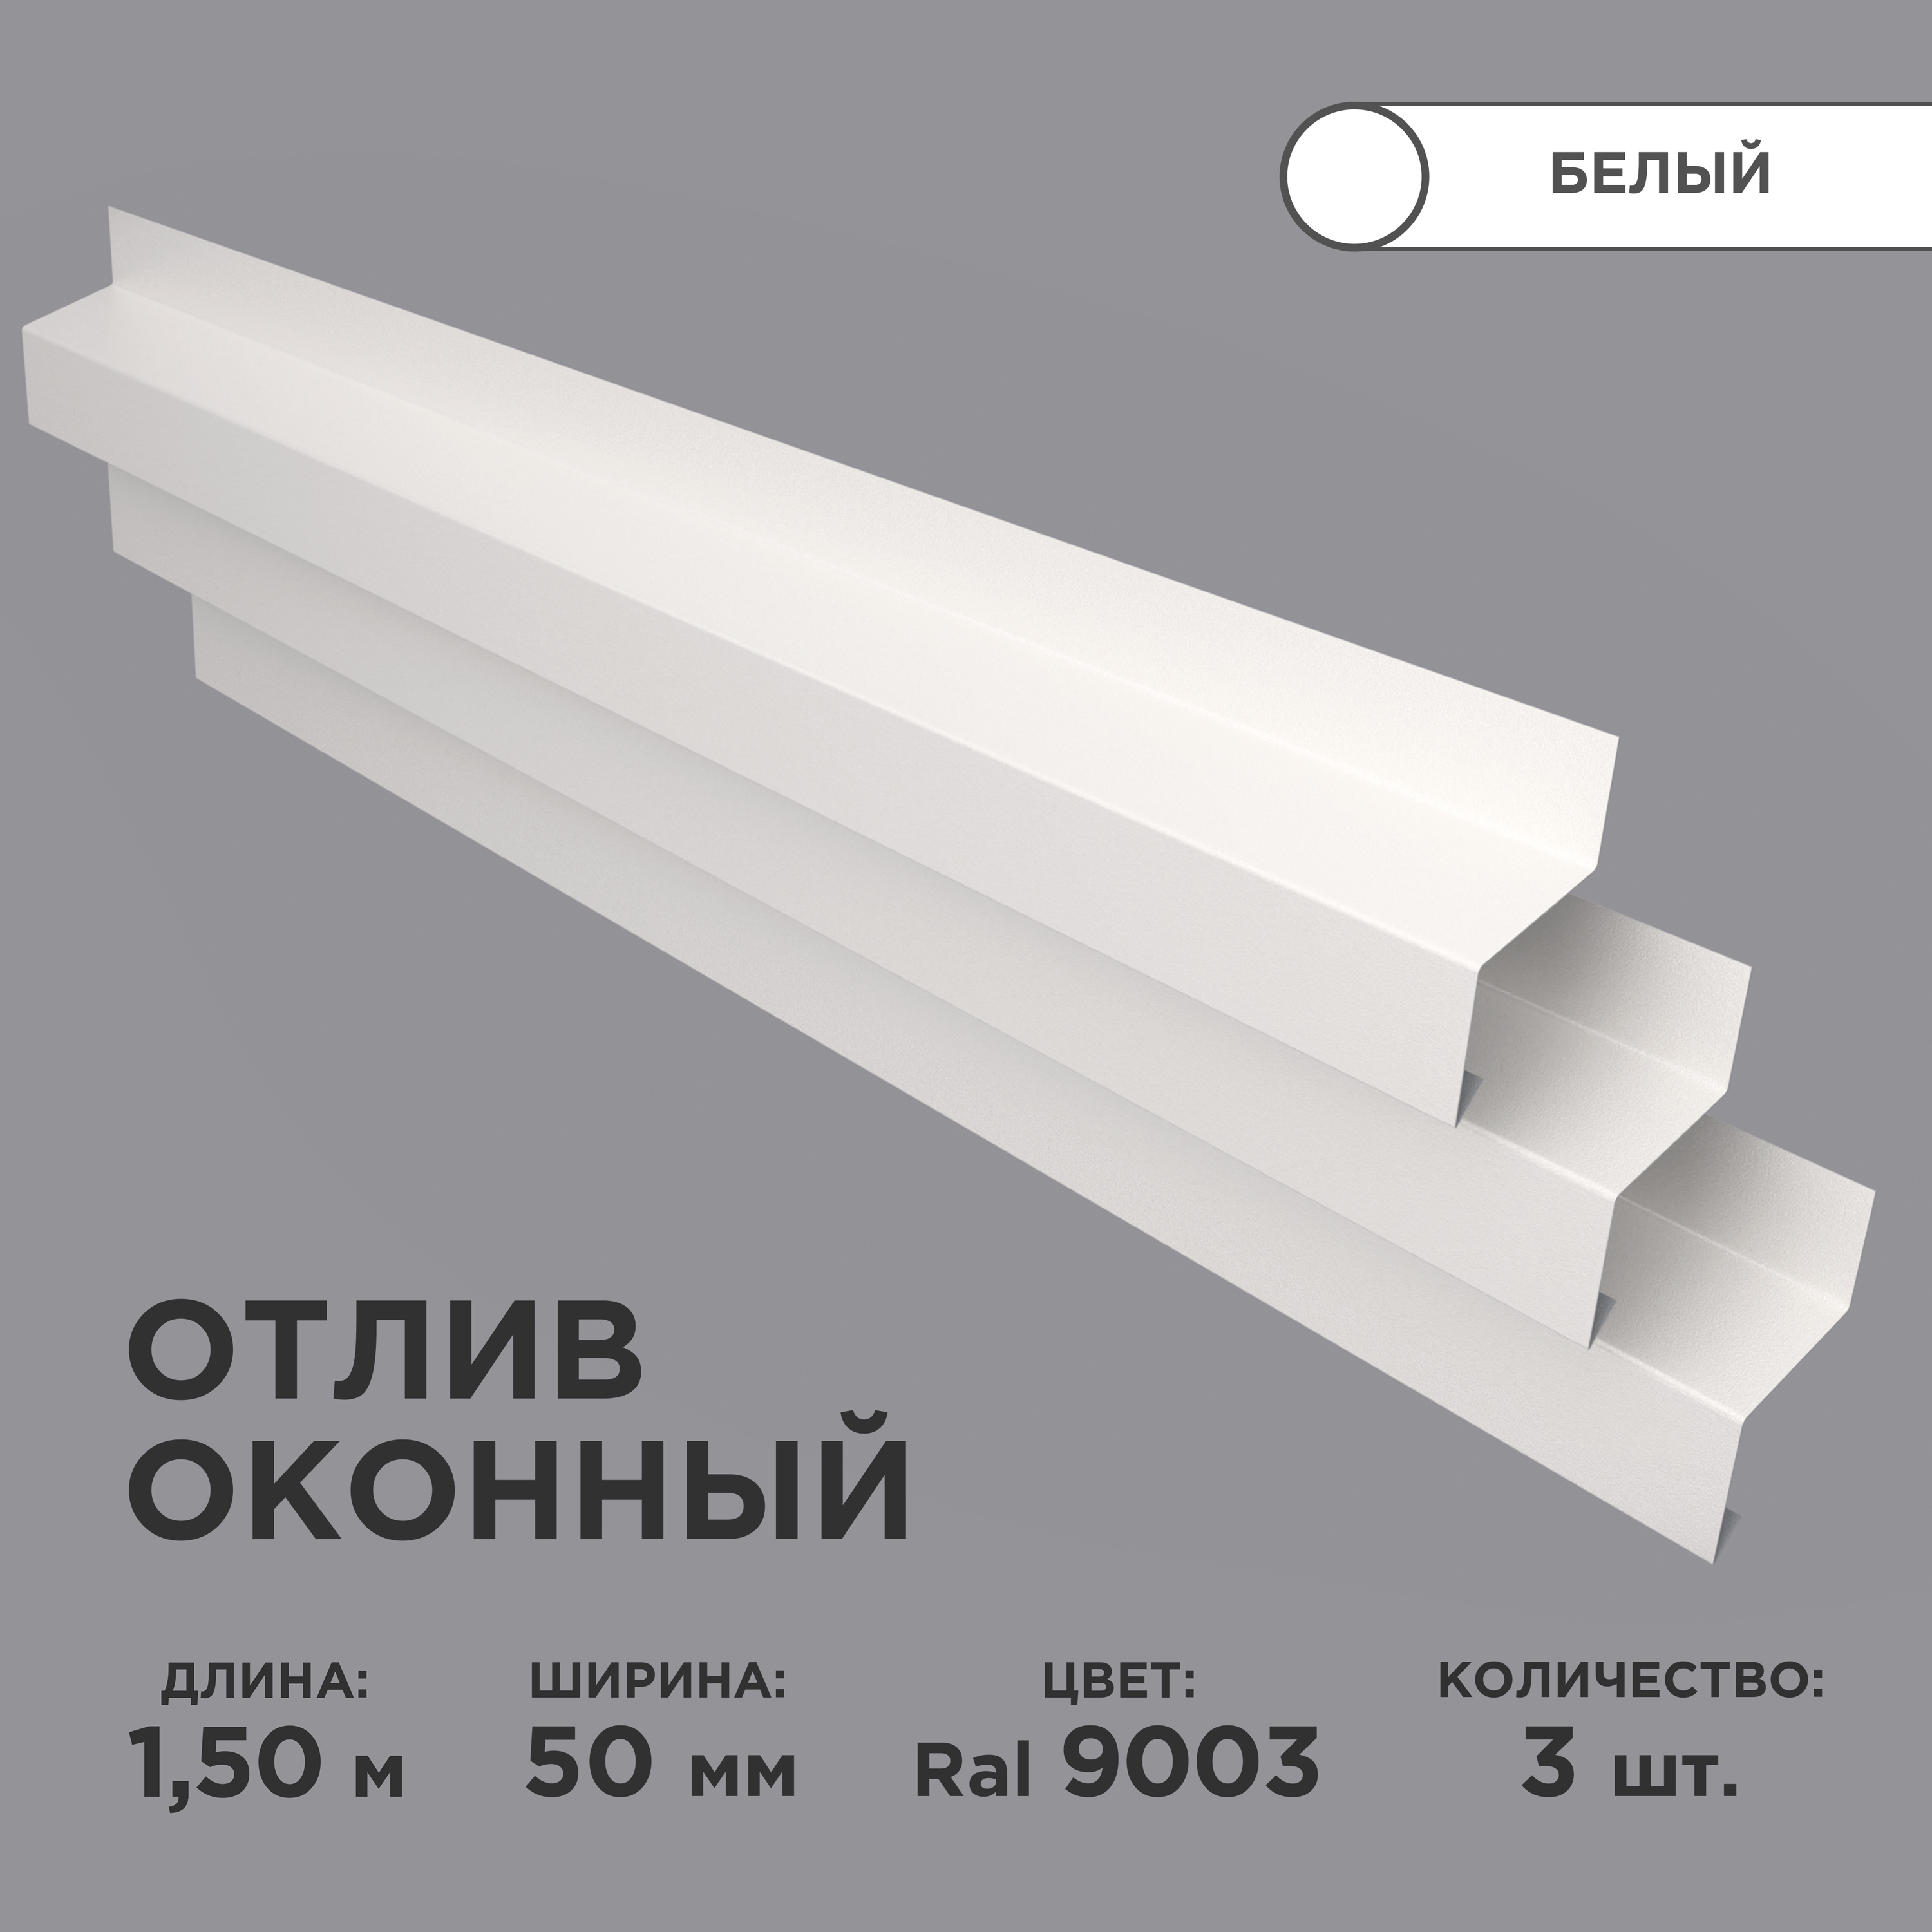 Отливоконныйширинаполки50мм/отливдляокна/цветбелый(RAL9003)Длина1,5м,3штукивкомплекте